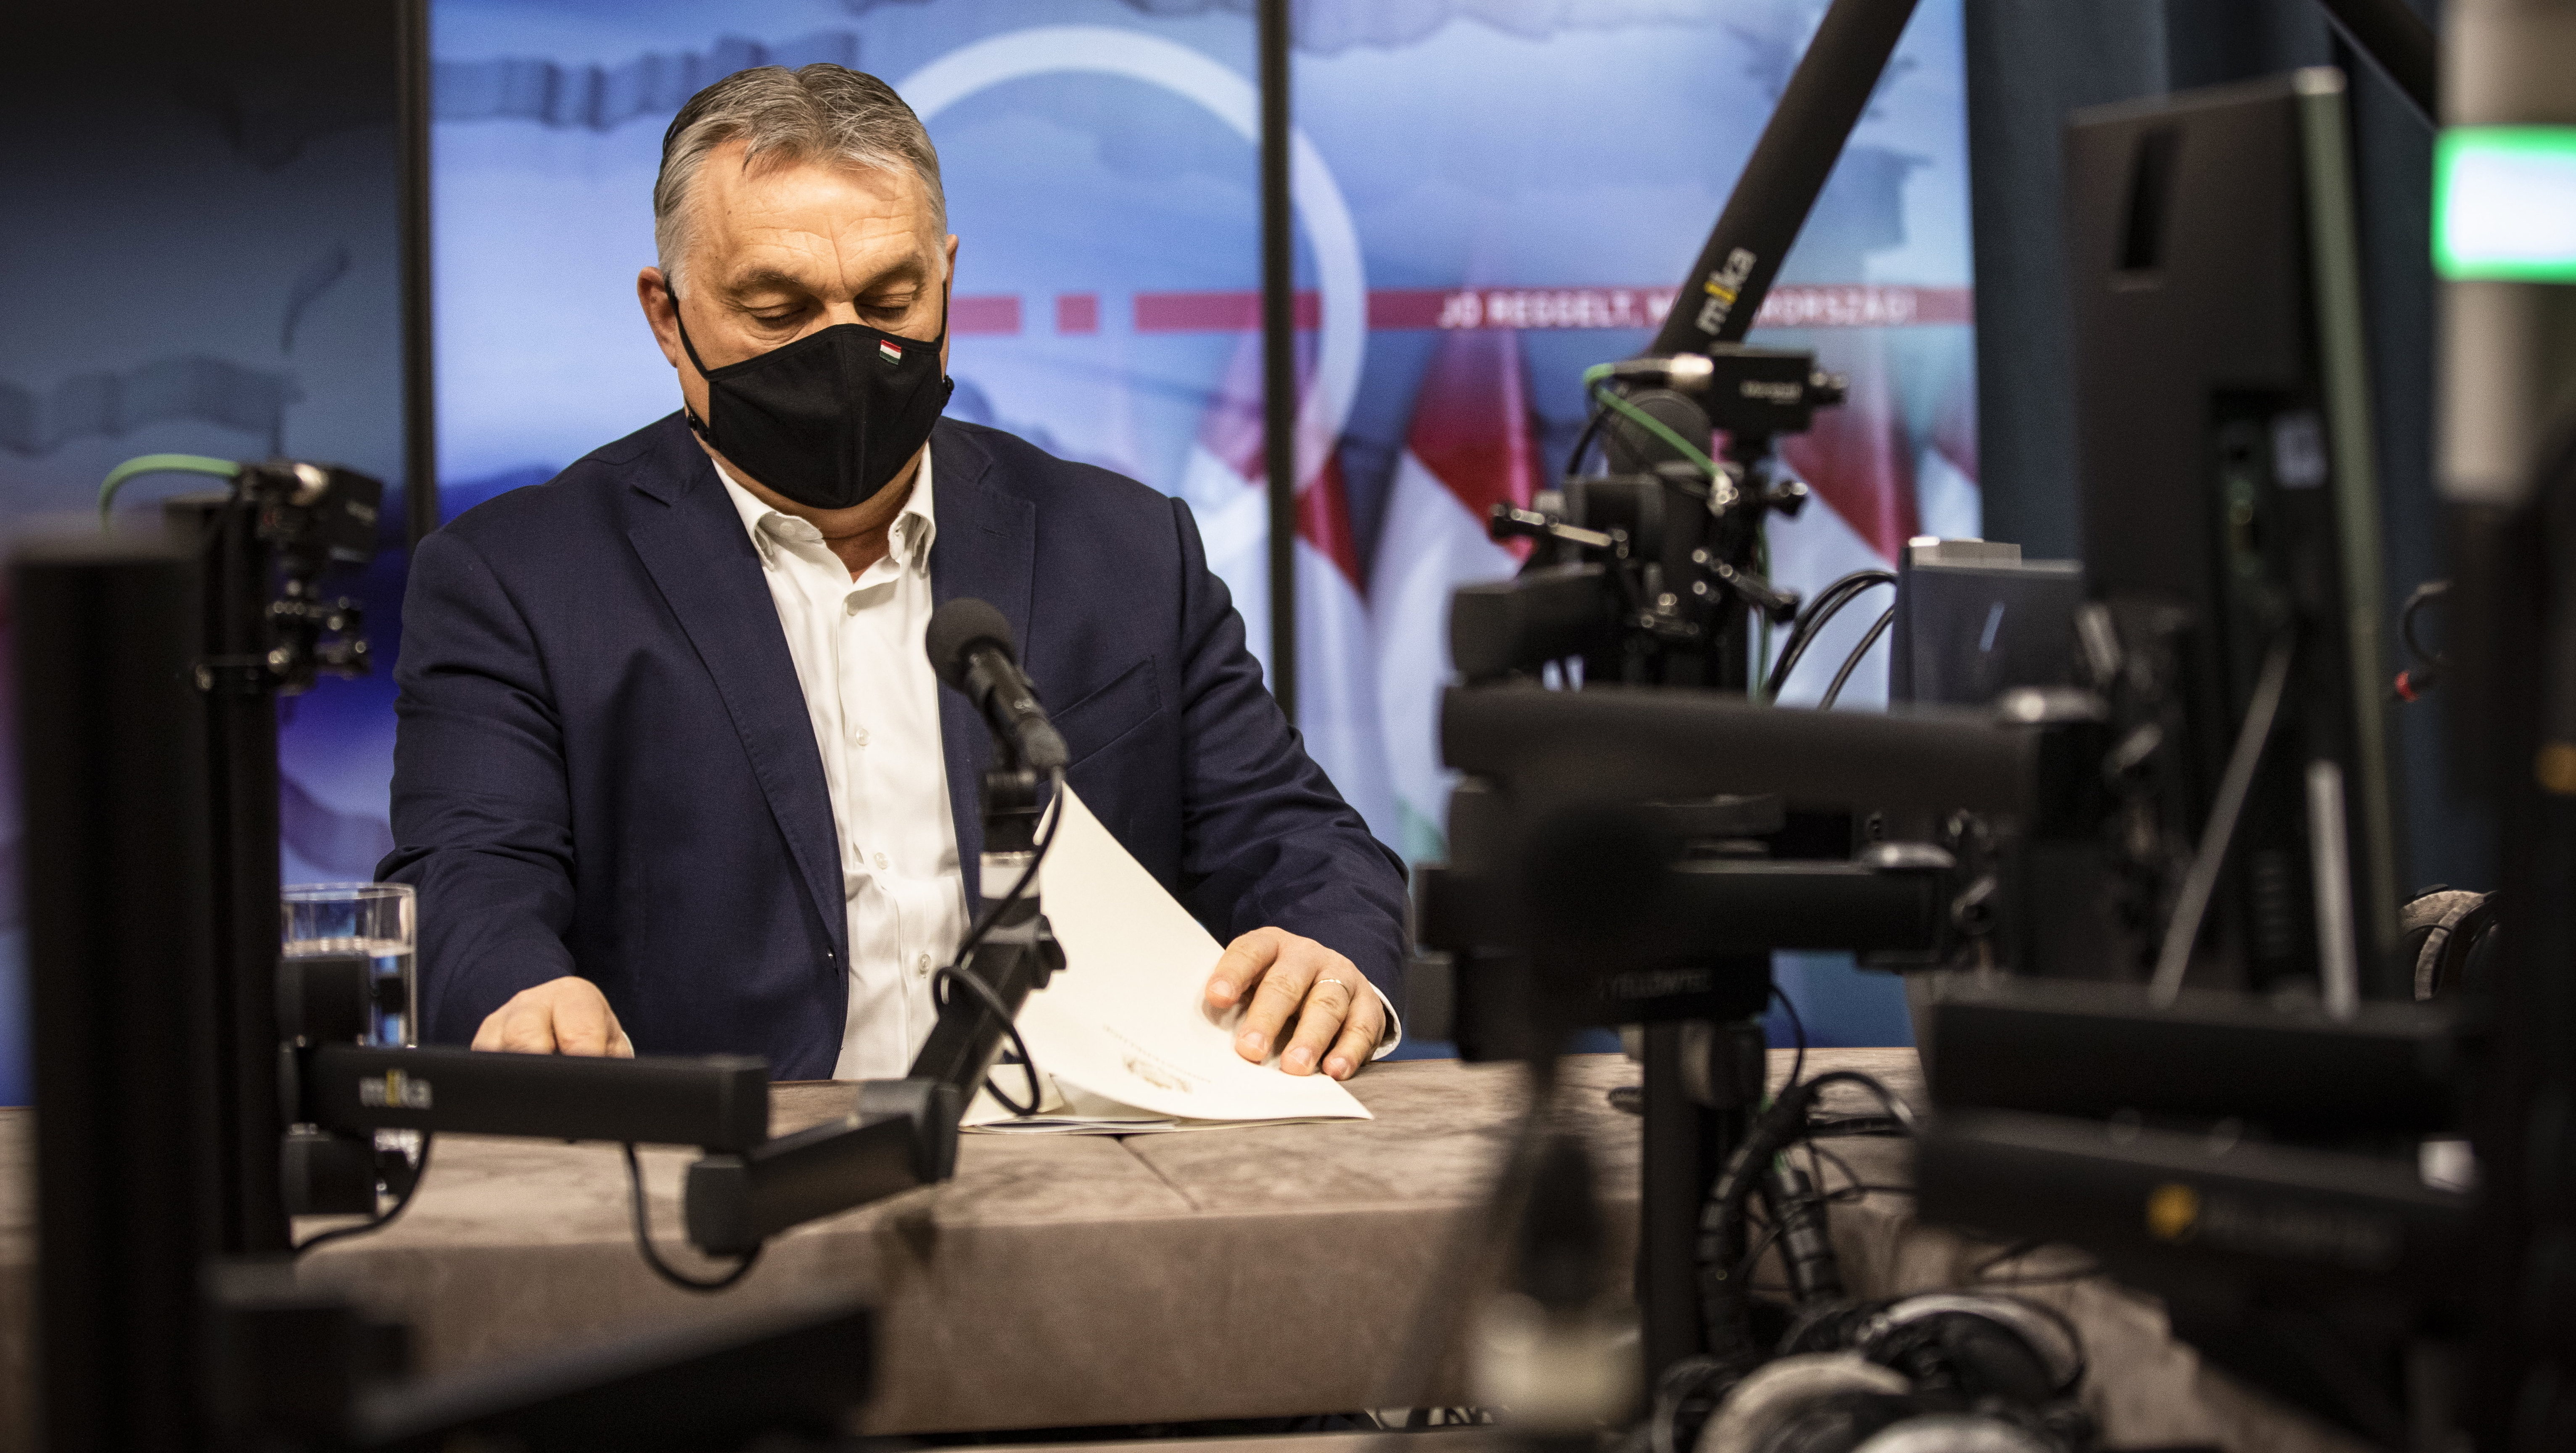 Kiderült a telefonszám, amit Orbán Viktor és Müller Cecília is képtelen volt bejelenteni